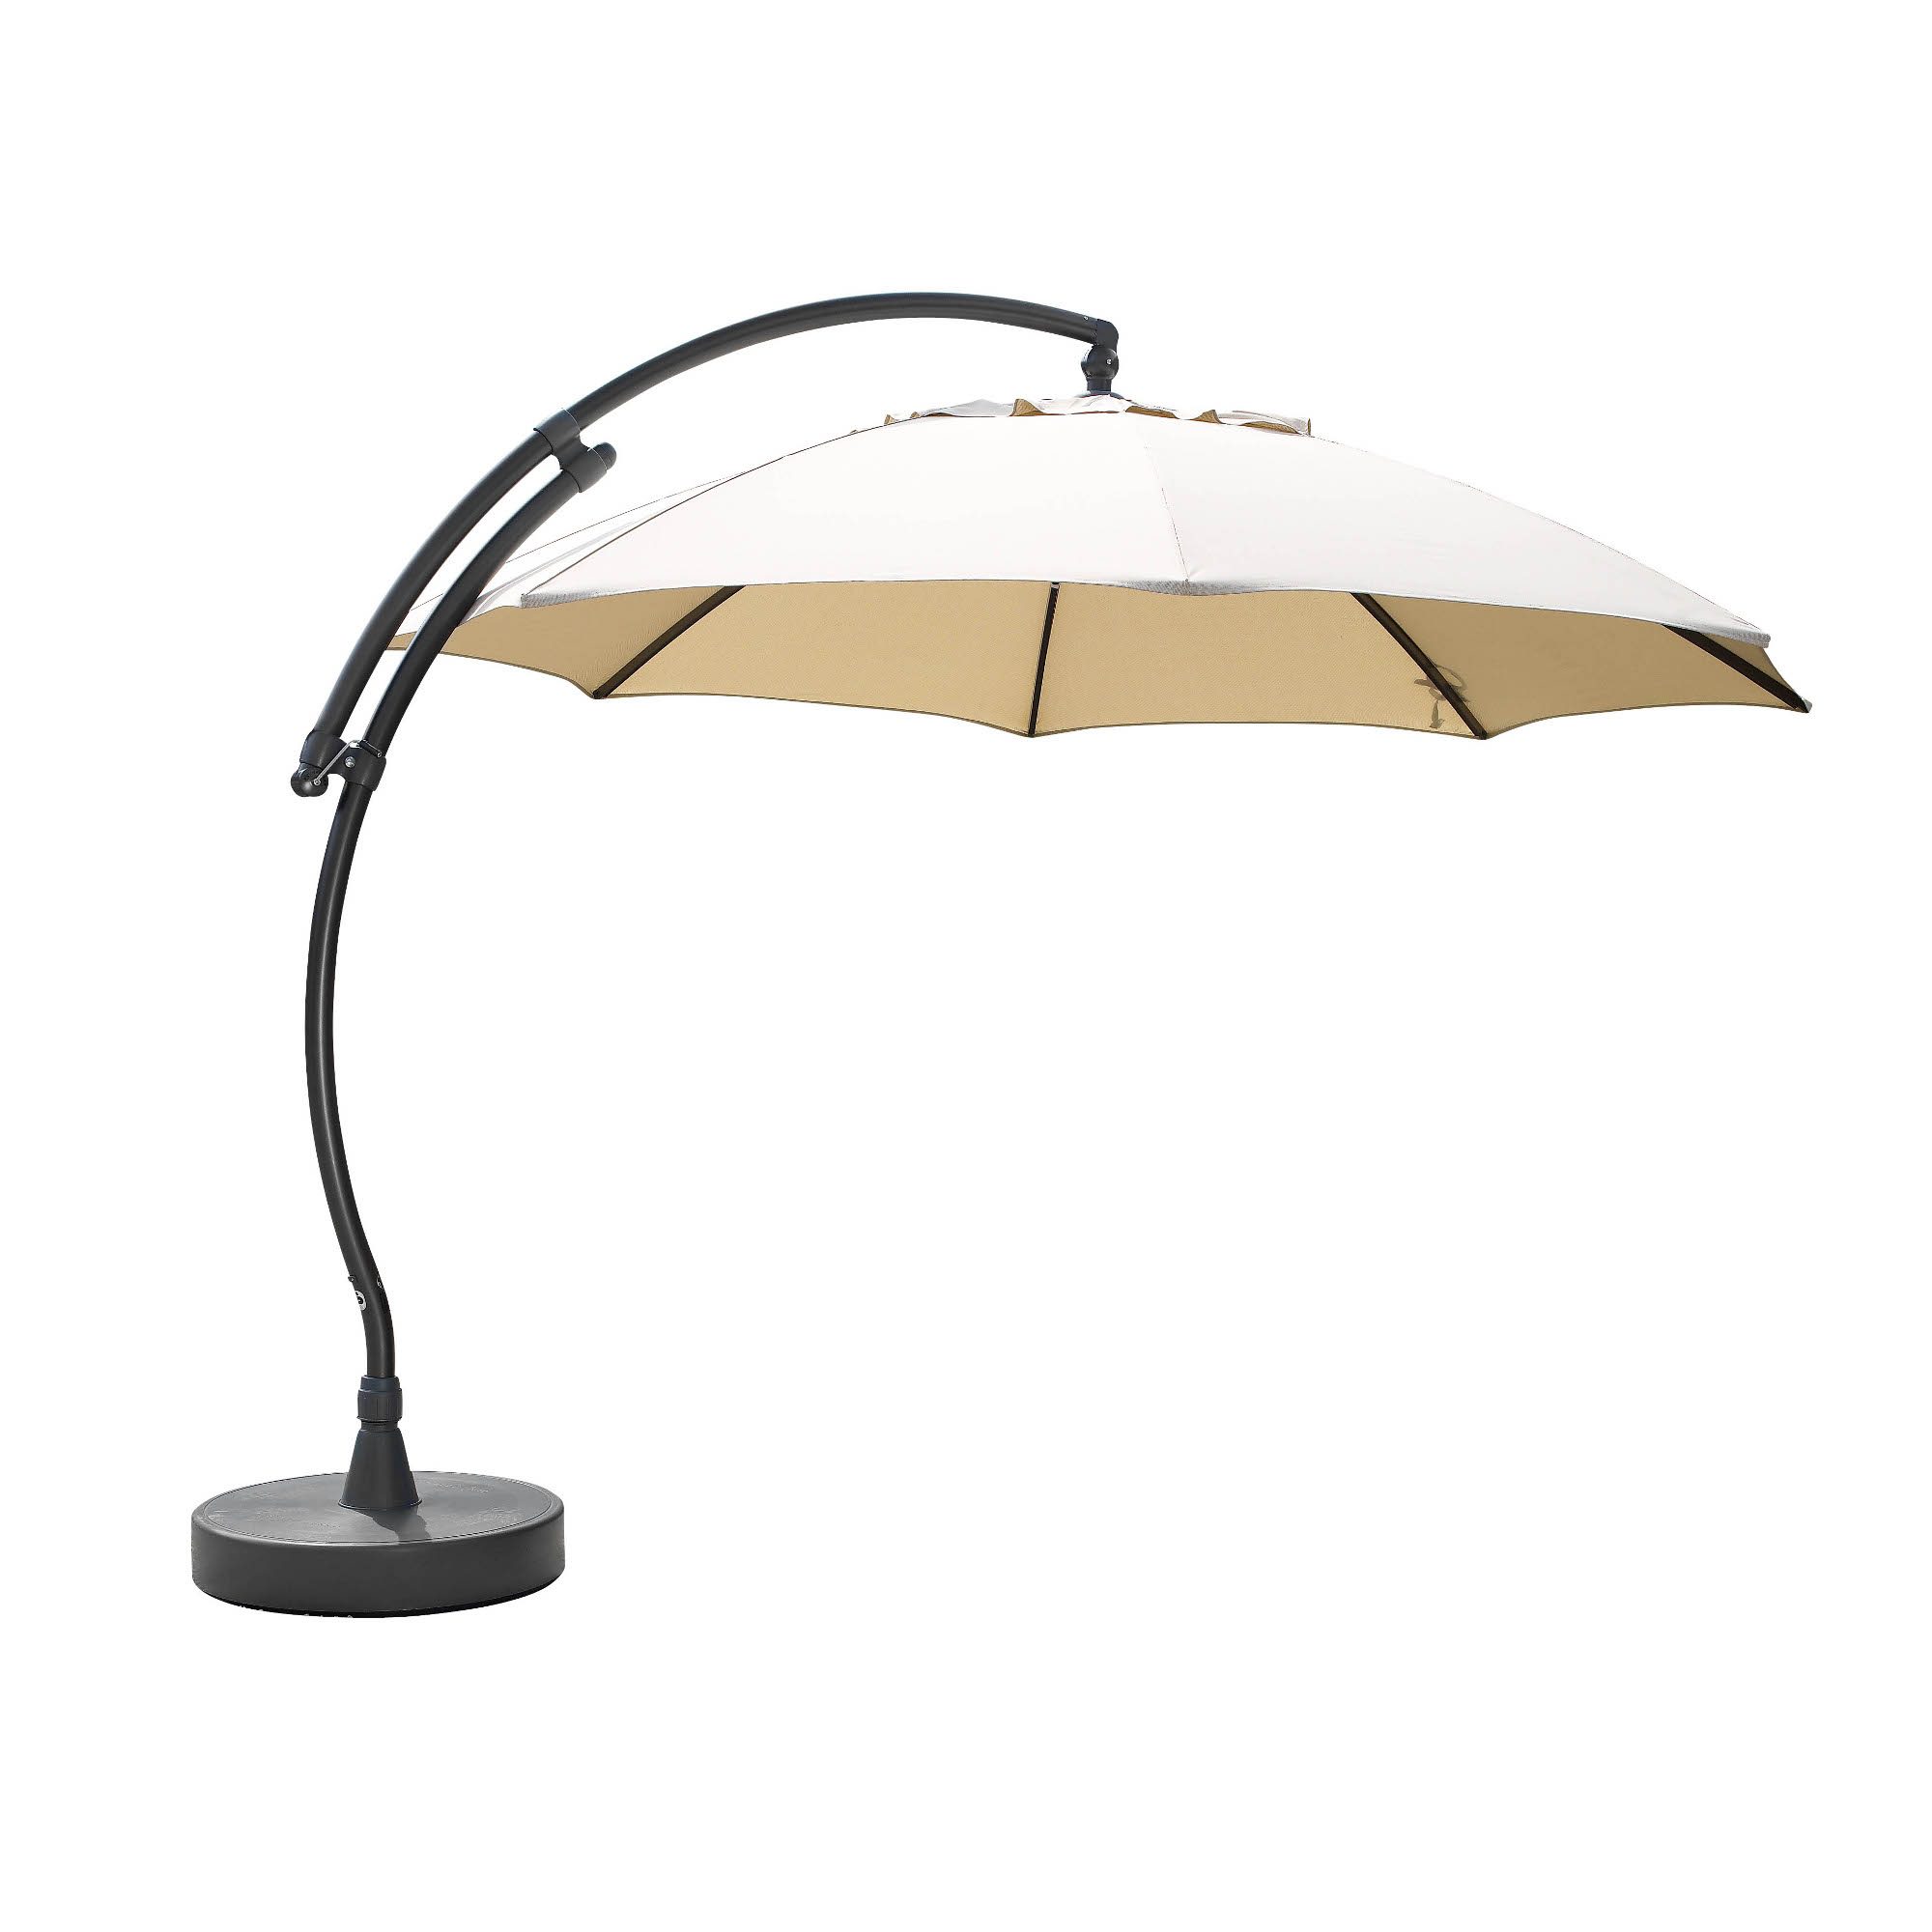 Easy Sun parasoll med antracitgrått stativ och beige duk från Brafab.